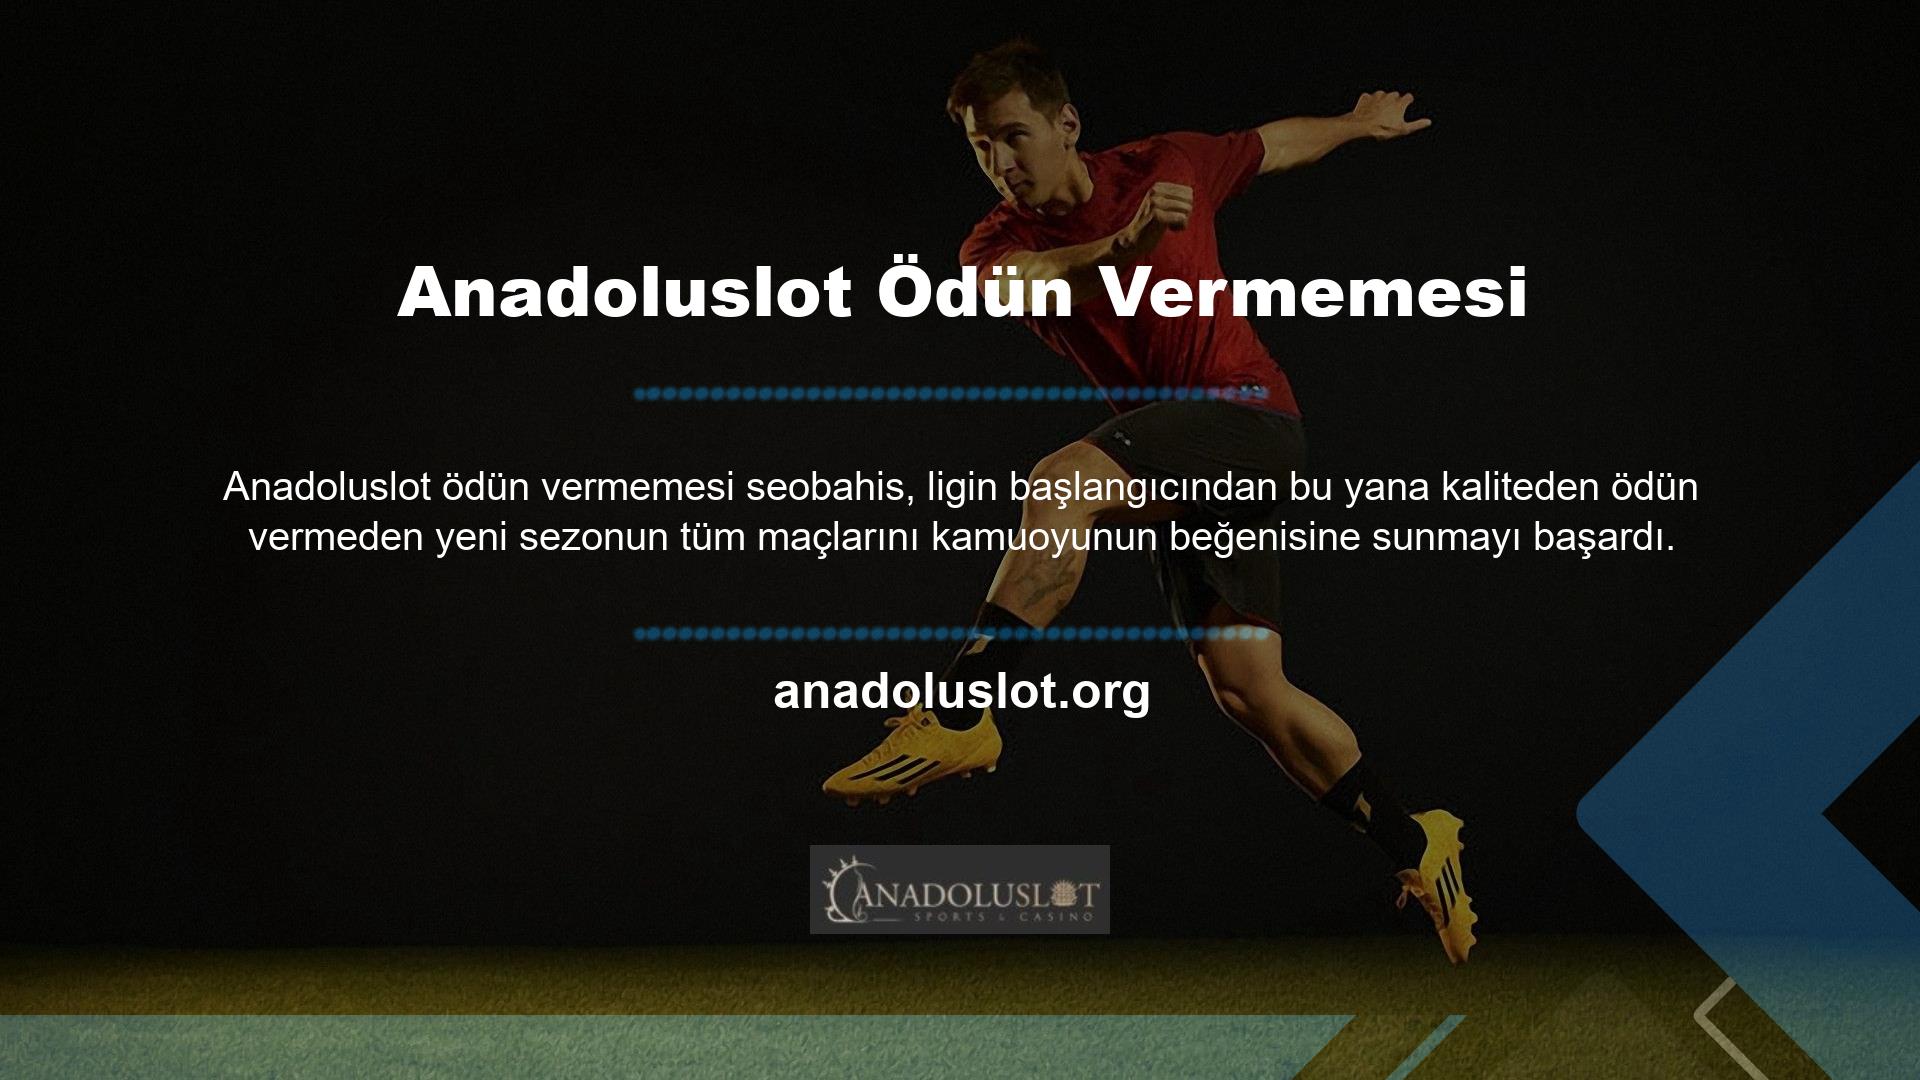 Türkiye ligi dahil dünyadaki tüm ligleri yayınlayan sitede Anadoluslot futbol maçlarını HD olarak izleyebilirsiniz